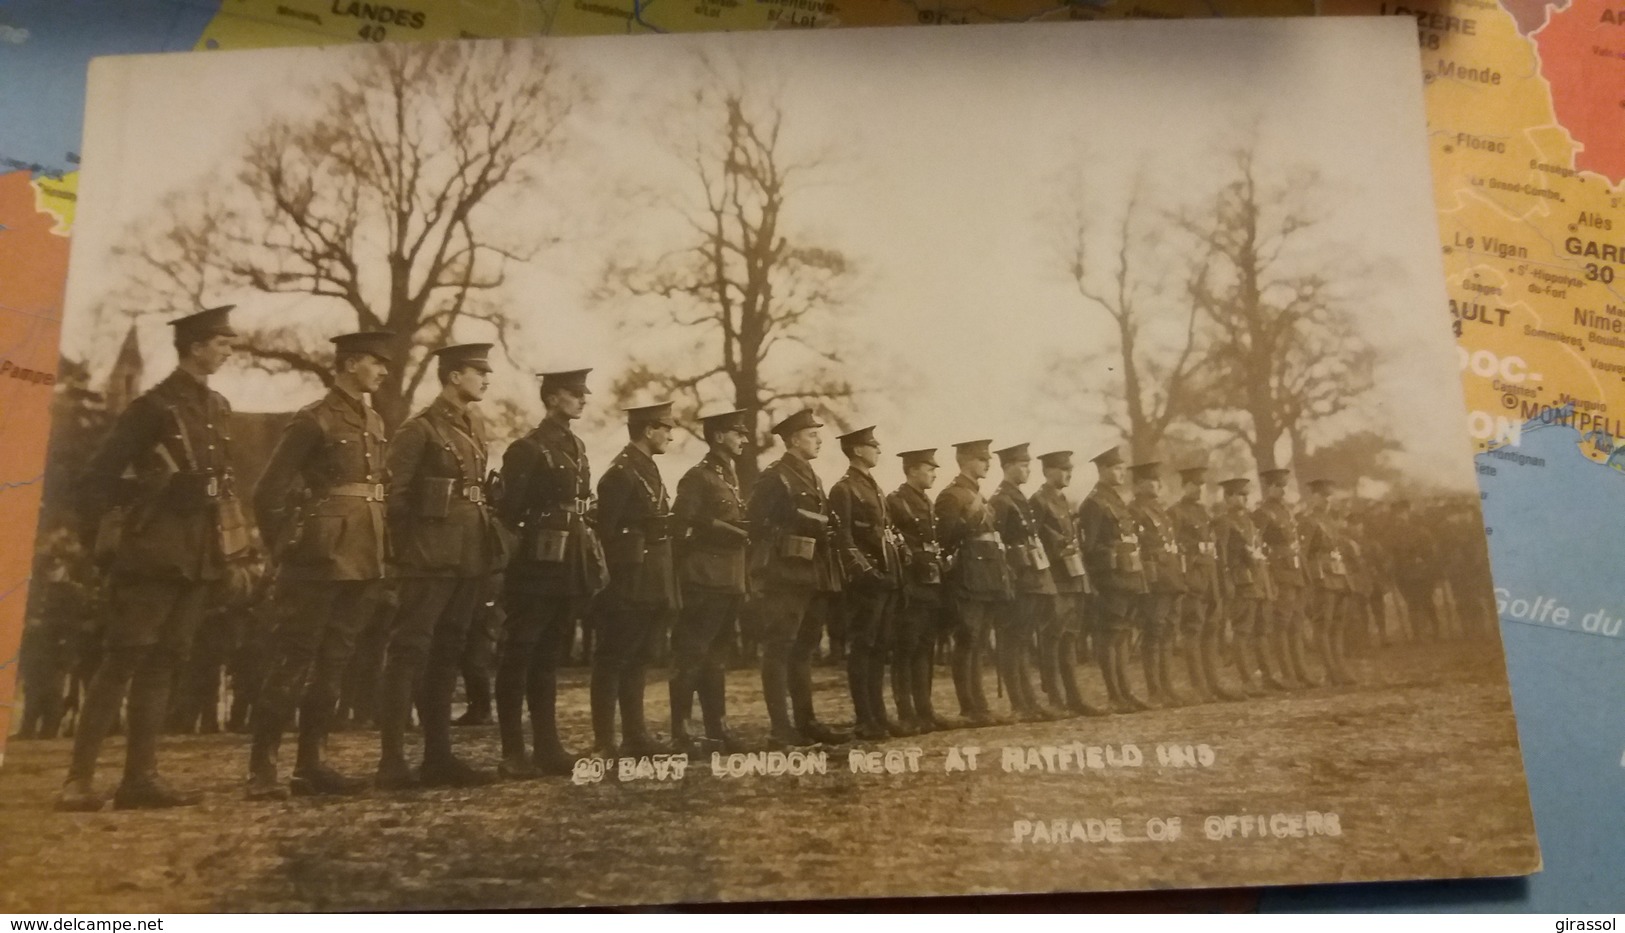 CPA CARTE PHOTO LONDON REGIMENT AT RATFIELD 1915 Parade Of Officiers Guerre 1914-18 - Guerre 1914-18